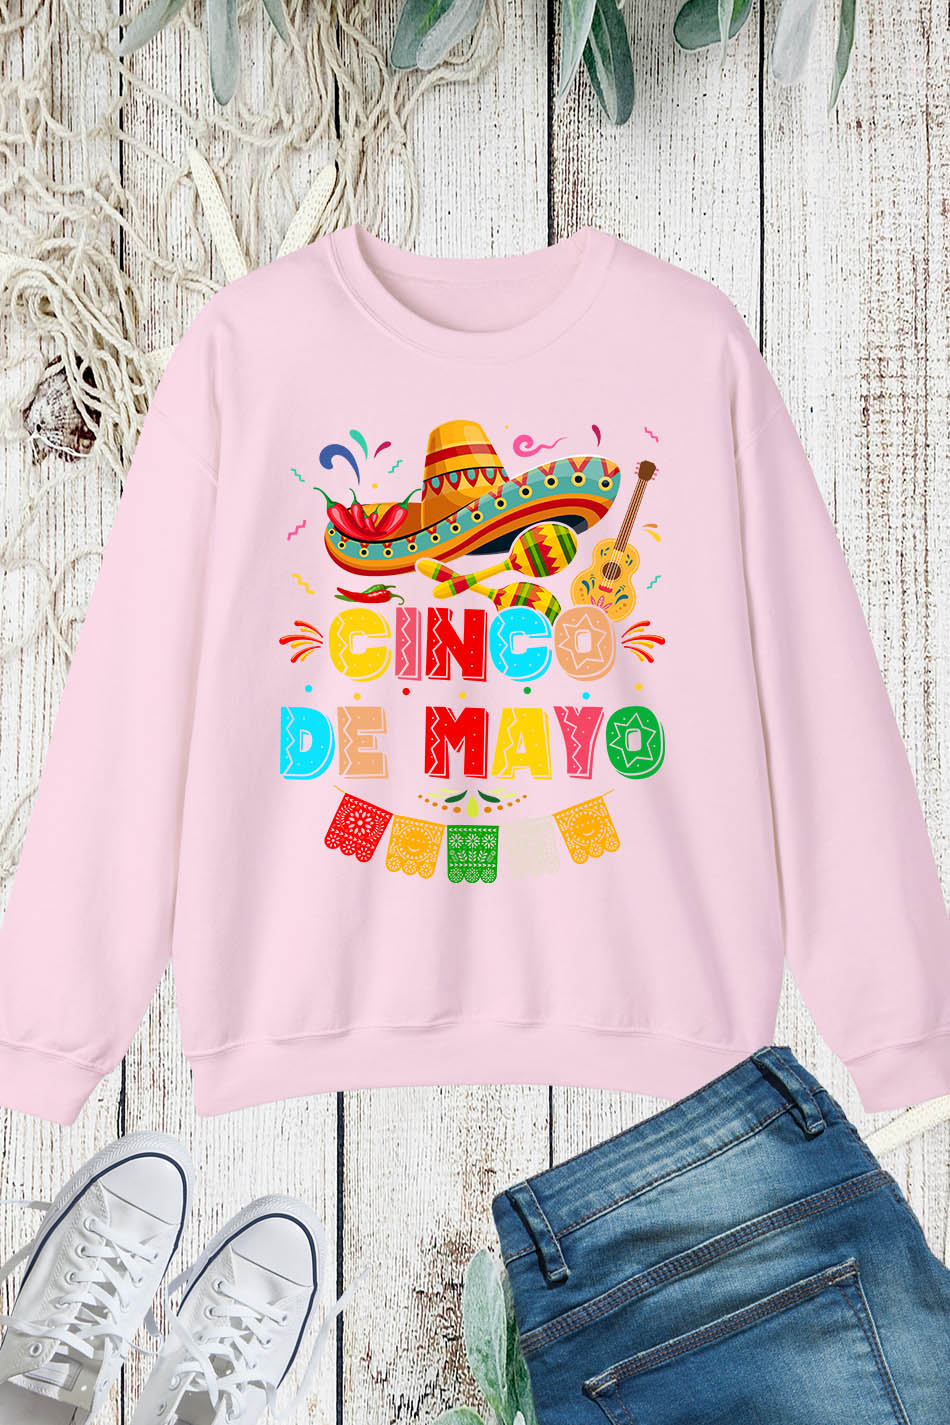 Cinco De Mayo Mexican Fiesta Sweatshirt